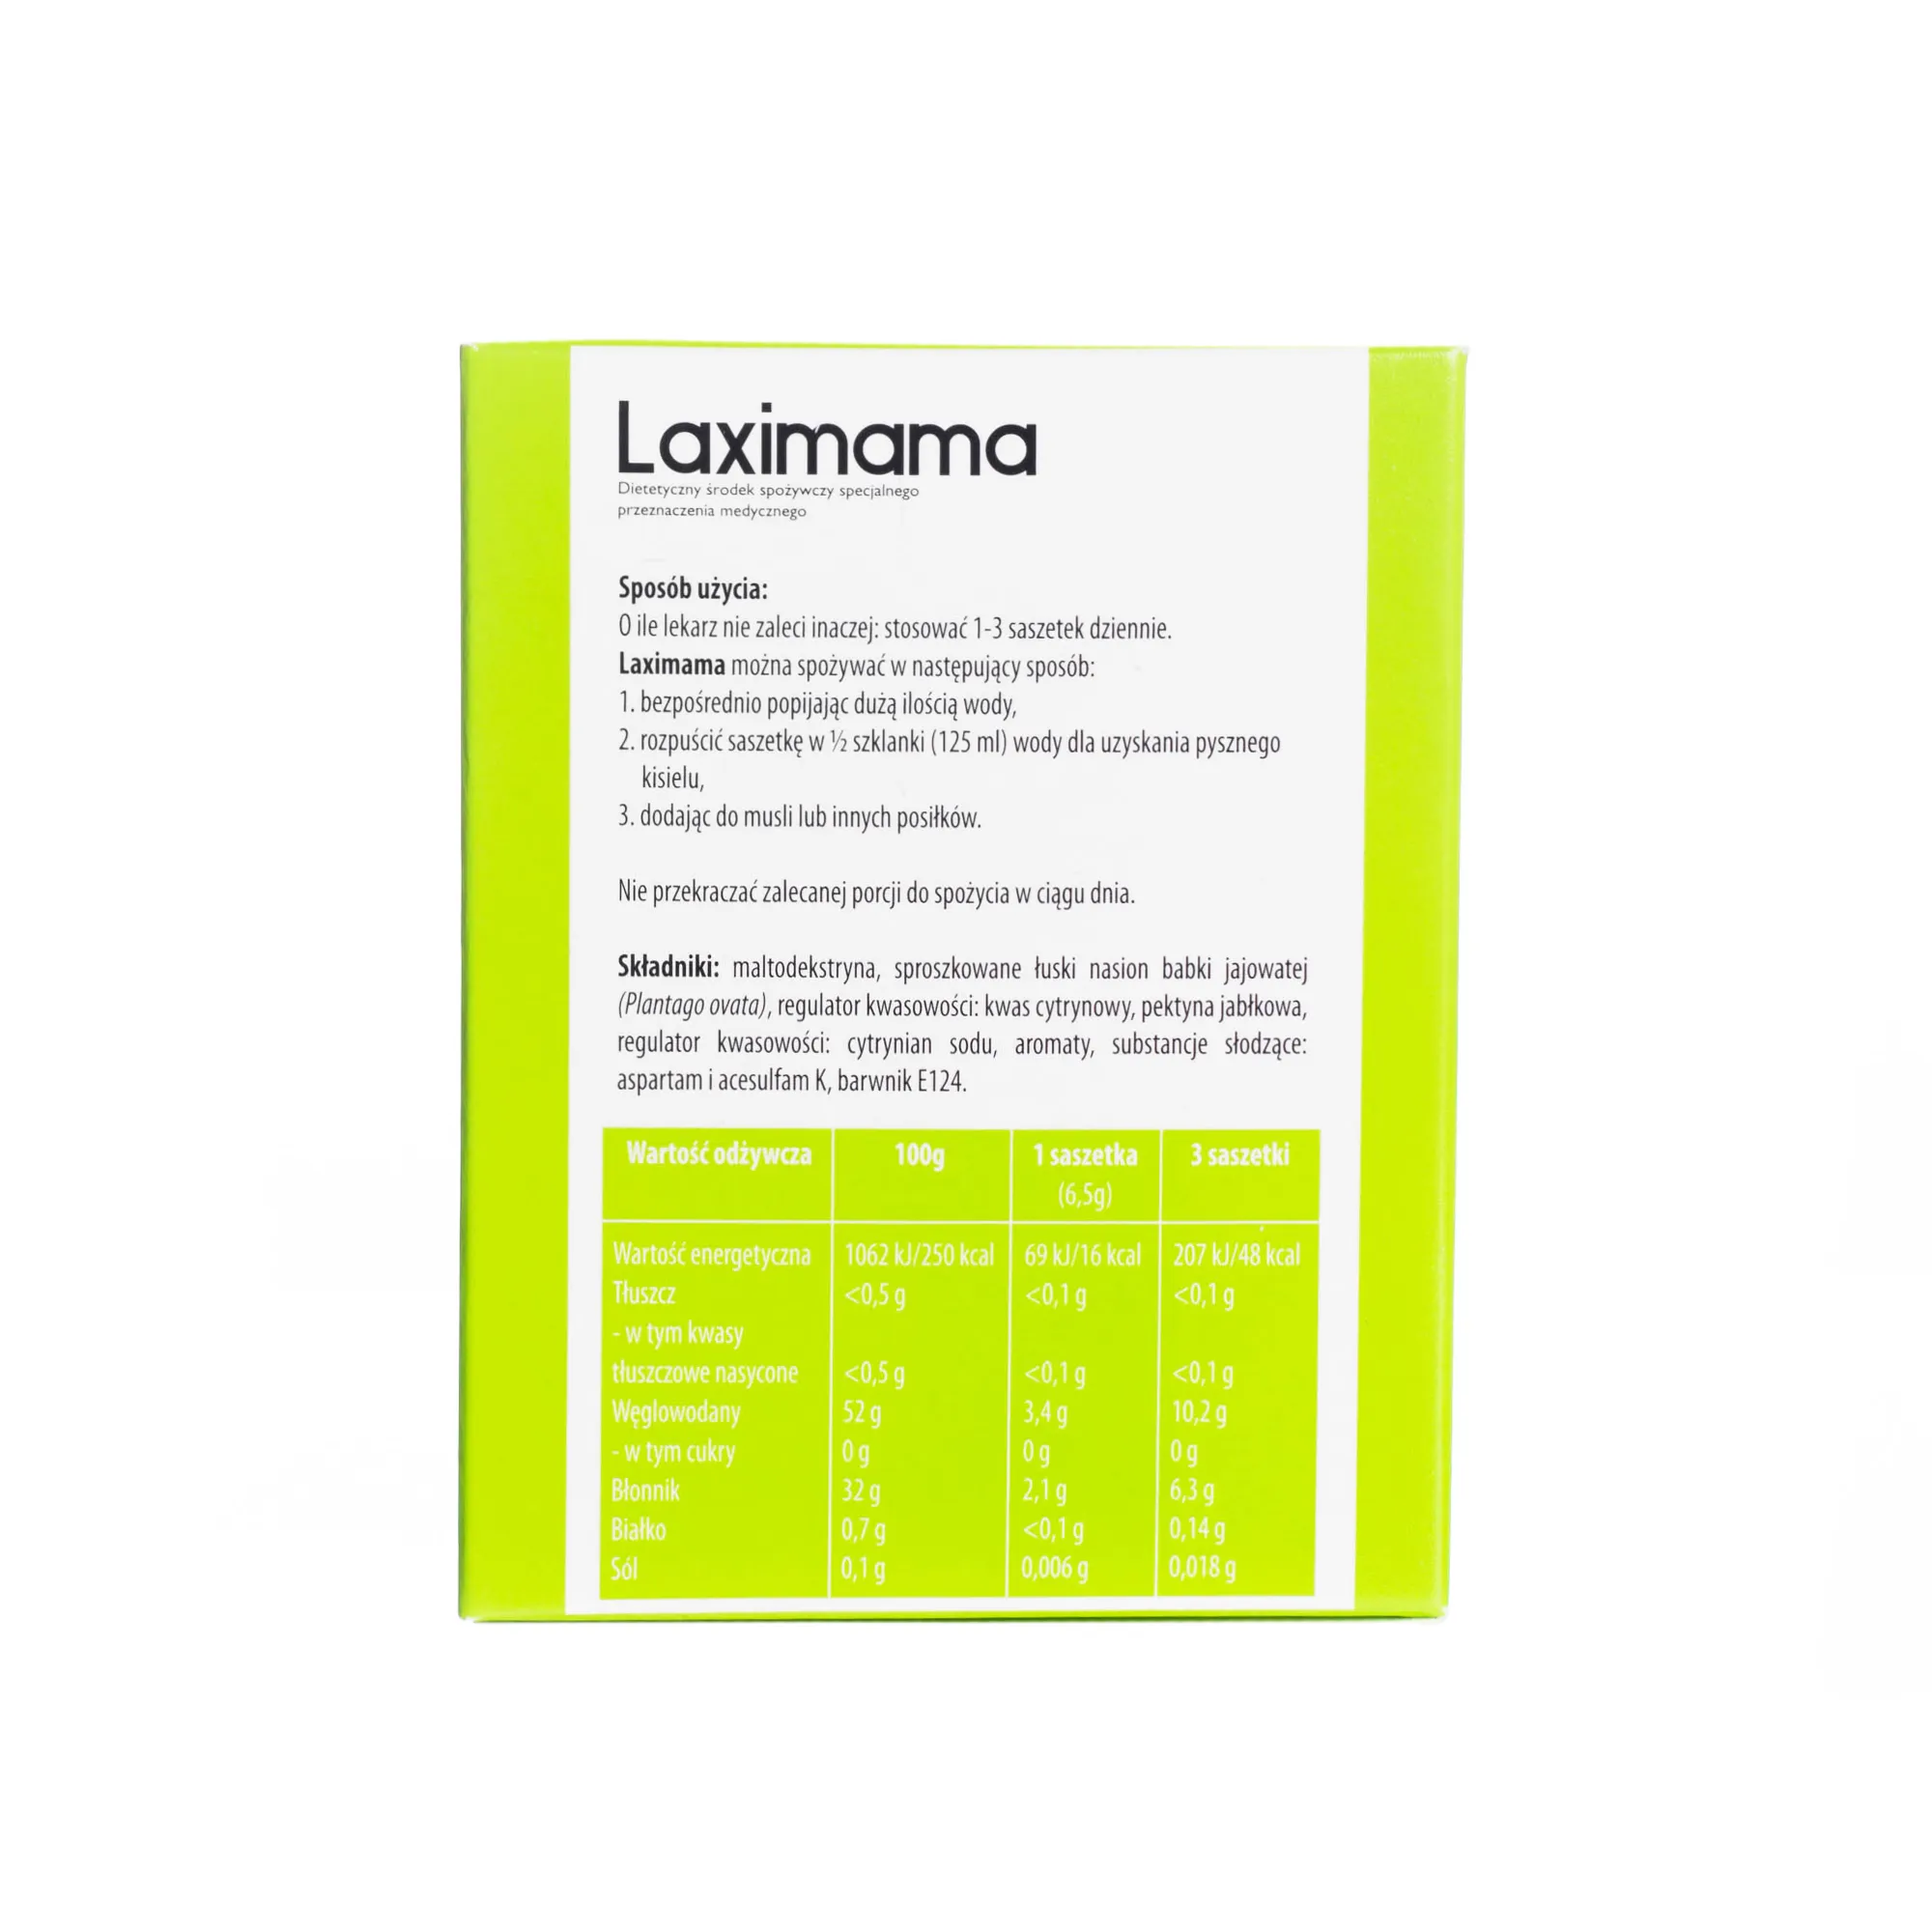 Laximama, preparat na zaparcia i wzdęcia dla kobiet w ciąży, 20 saszetek 